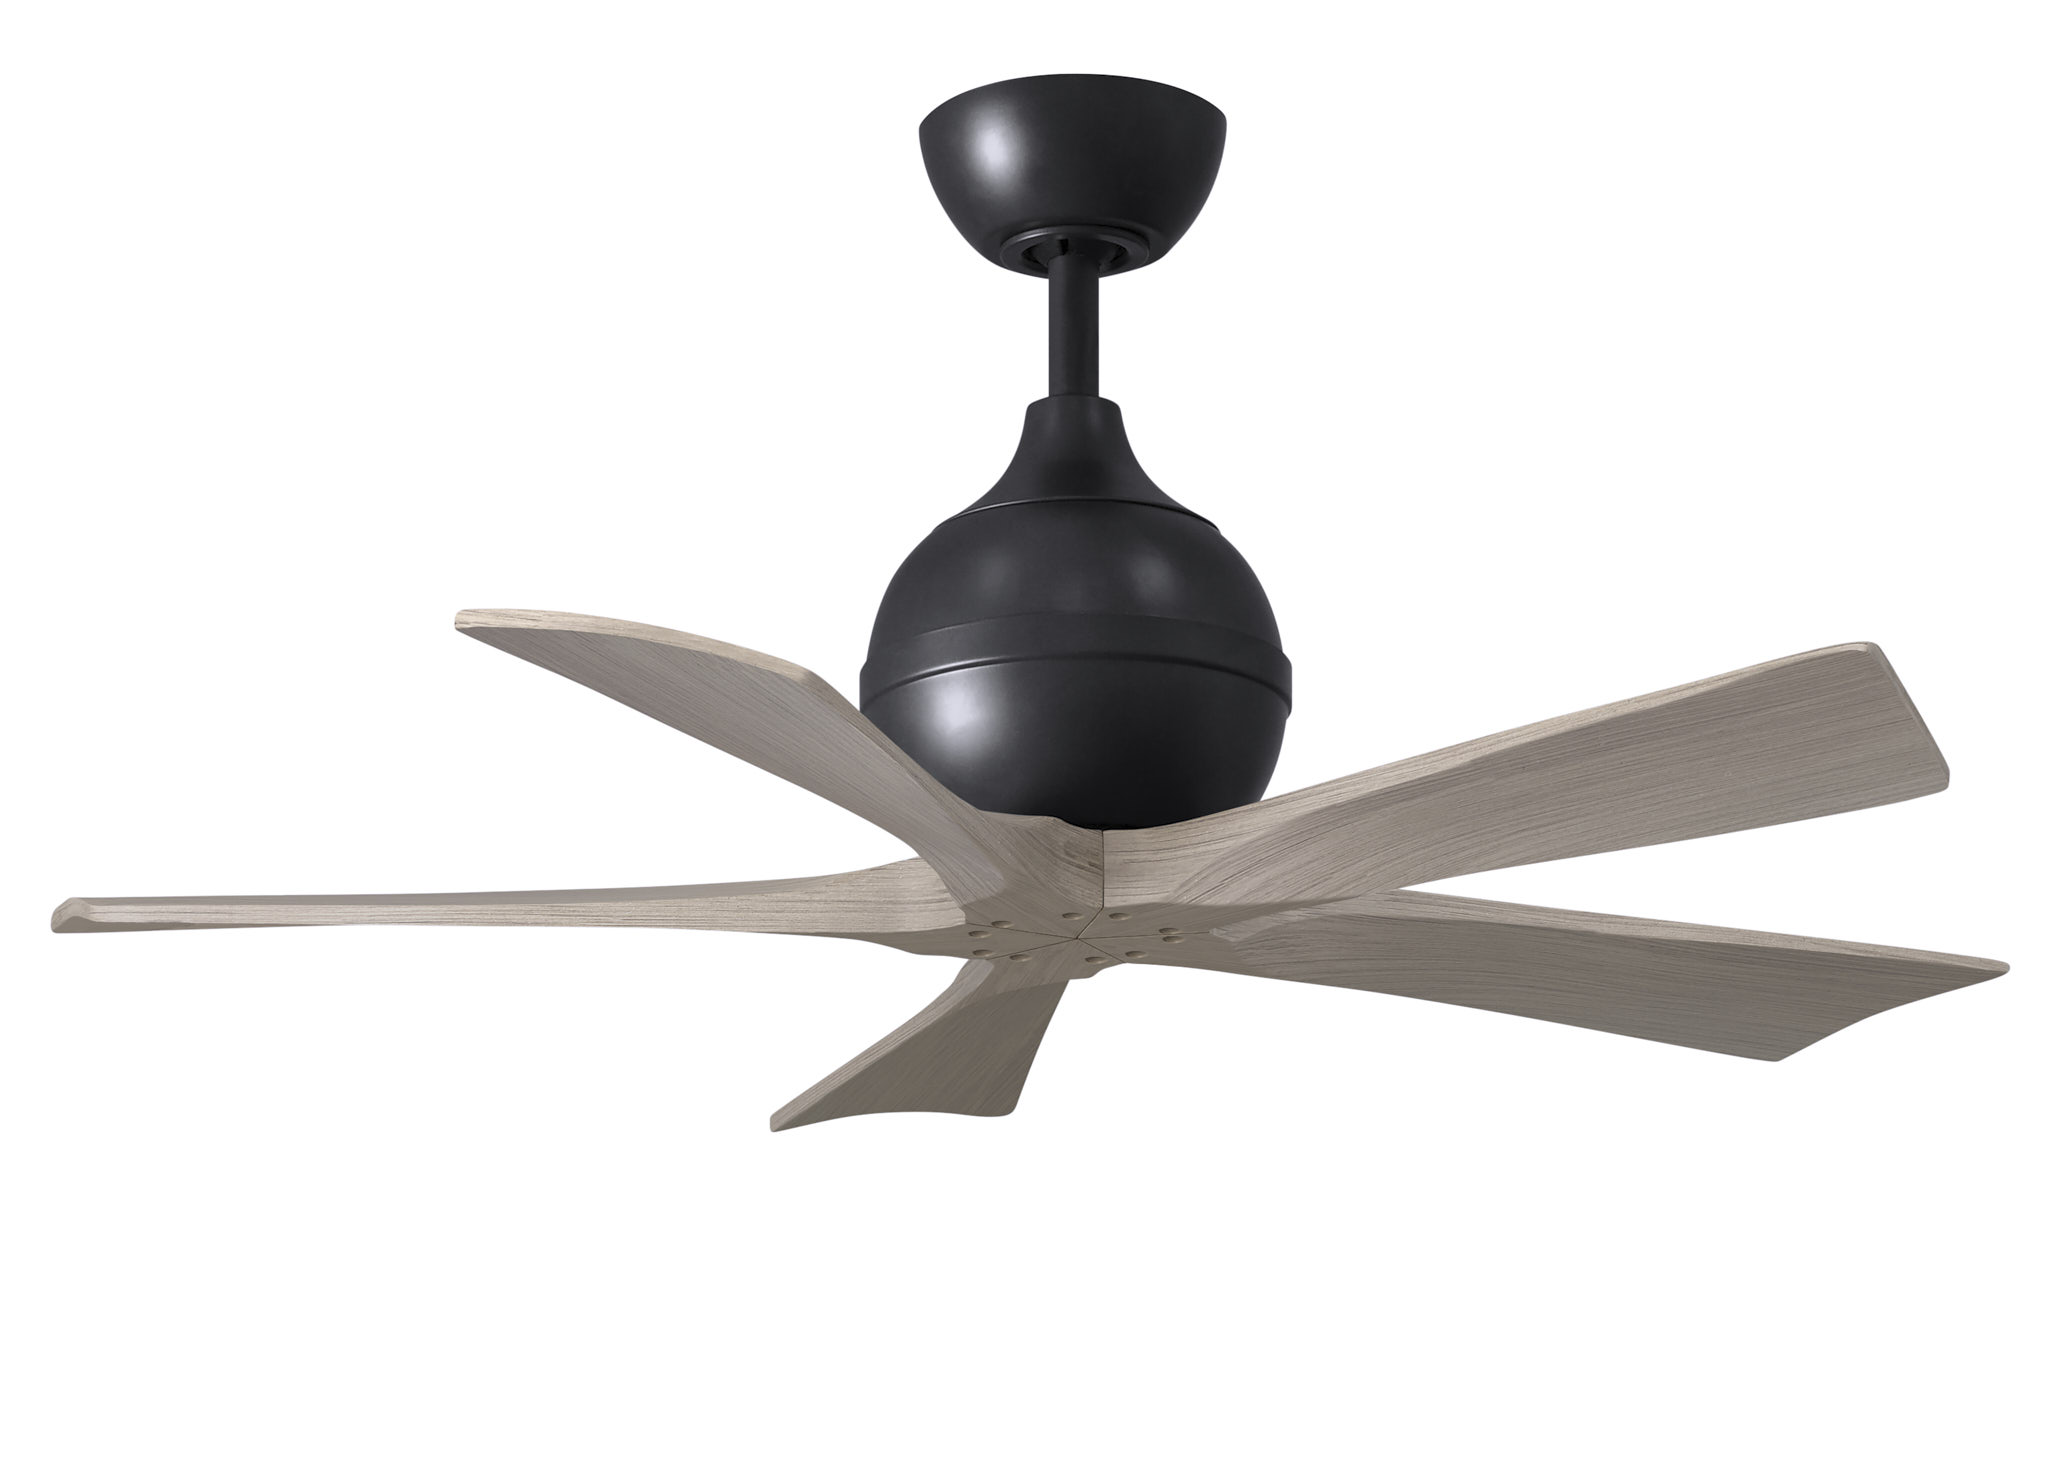 Irene-5 ceiling fan in matte black with 42